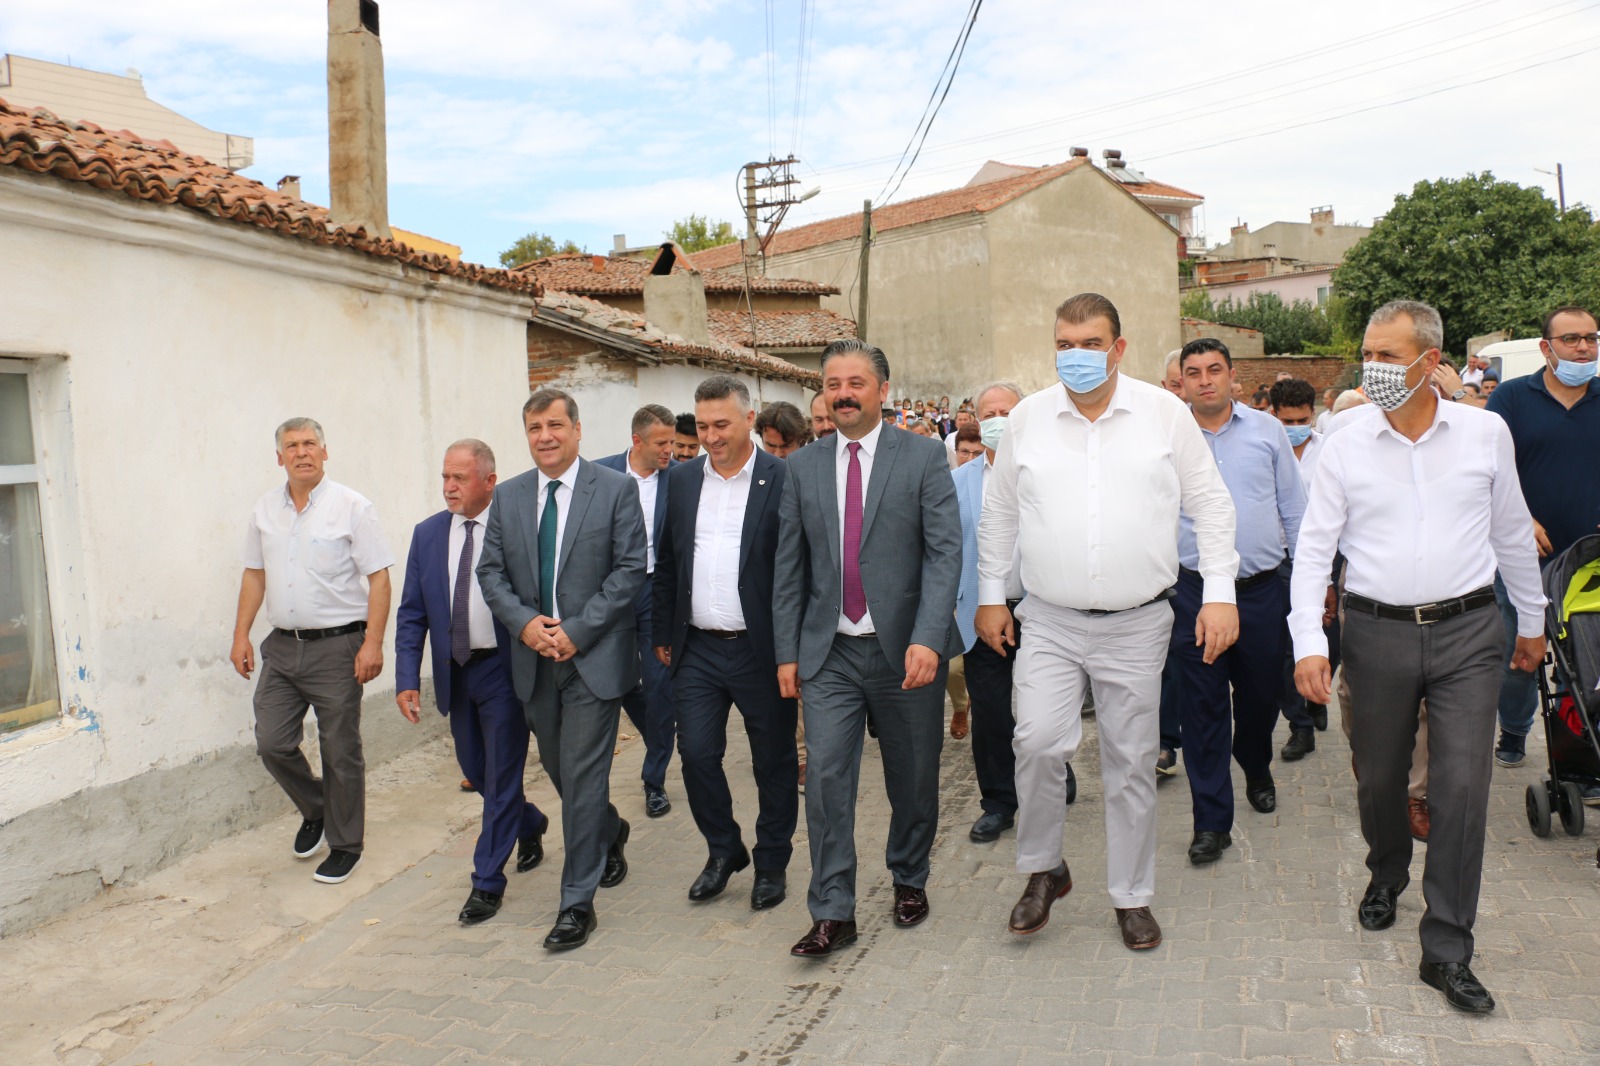 Seferihisar Belediye Bandosu Bayramiç’in kurtuluş coşkusuna ortak oldu